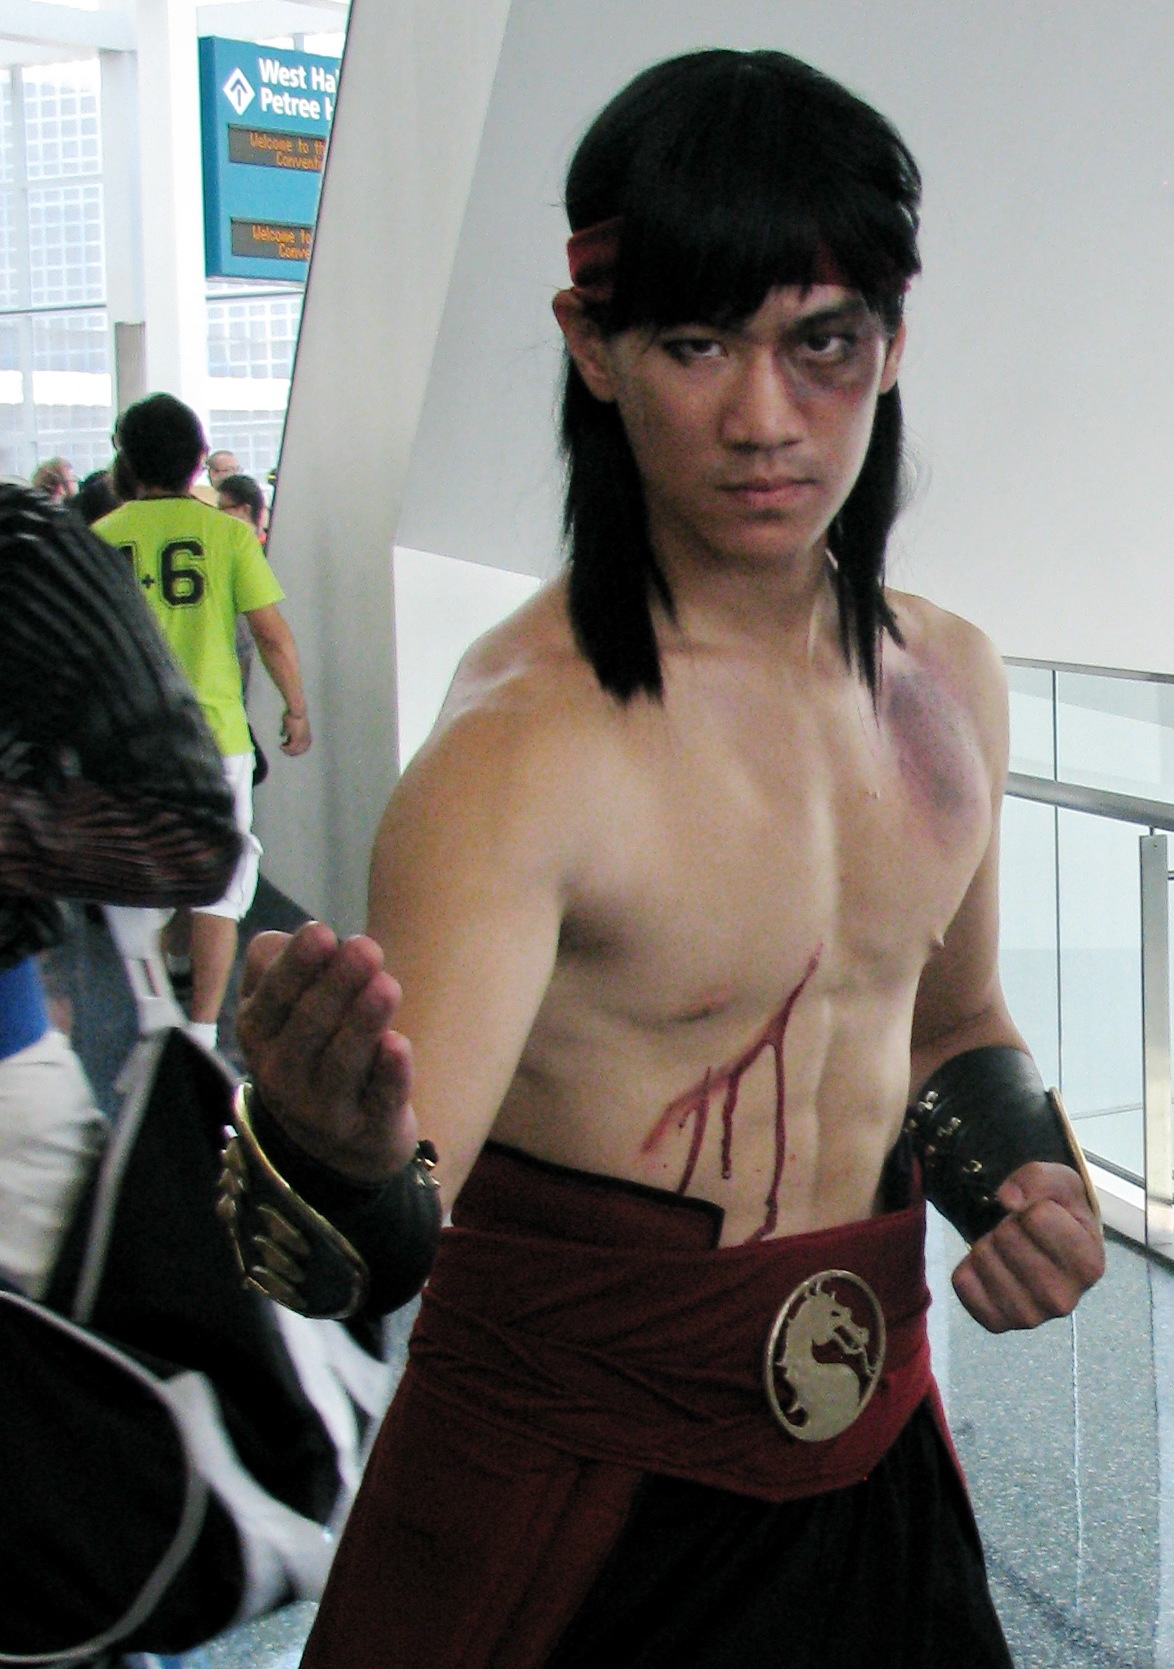 Liu Kang/Mortal Kombat II, Mortal Kombat Center Wiki